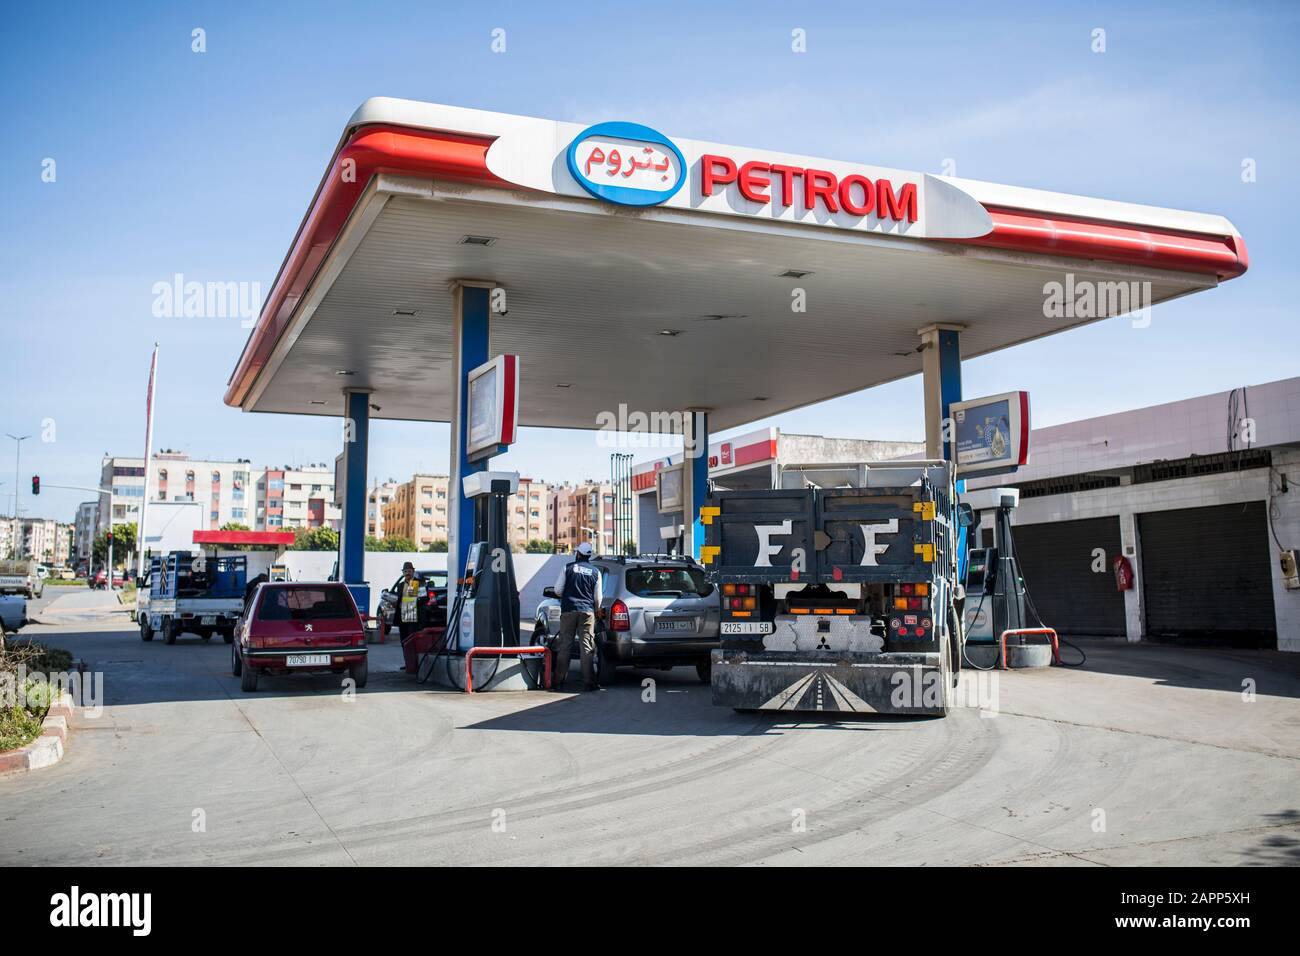 Vendita, Marocco - 9 aprile 2019: Stazione di benzina di Petrom in vendita, Marocco. Foto Stock